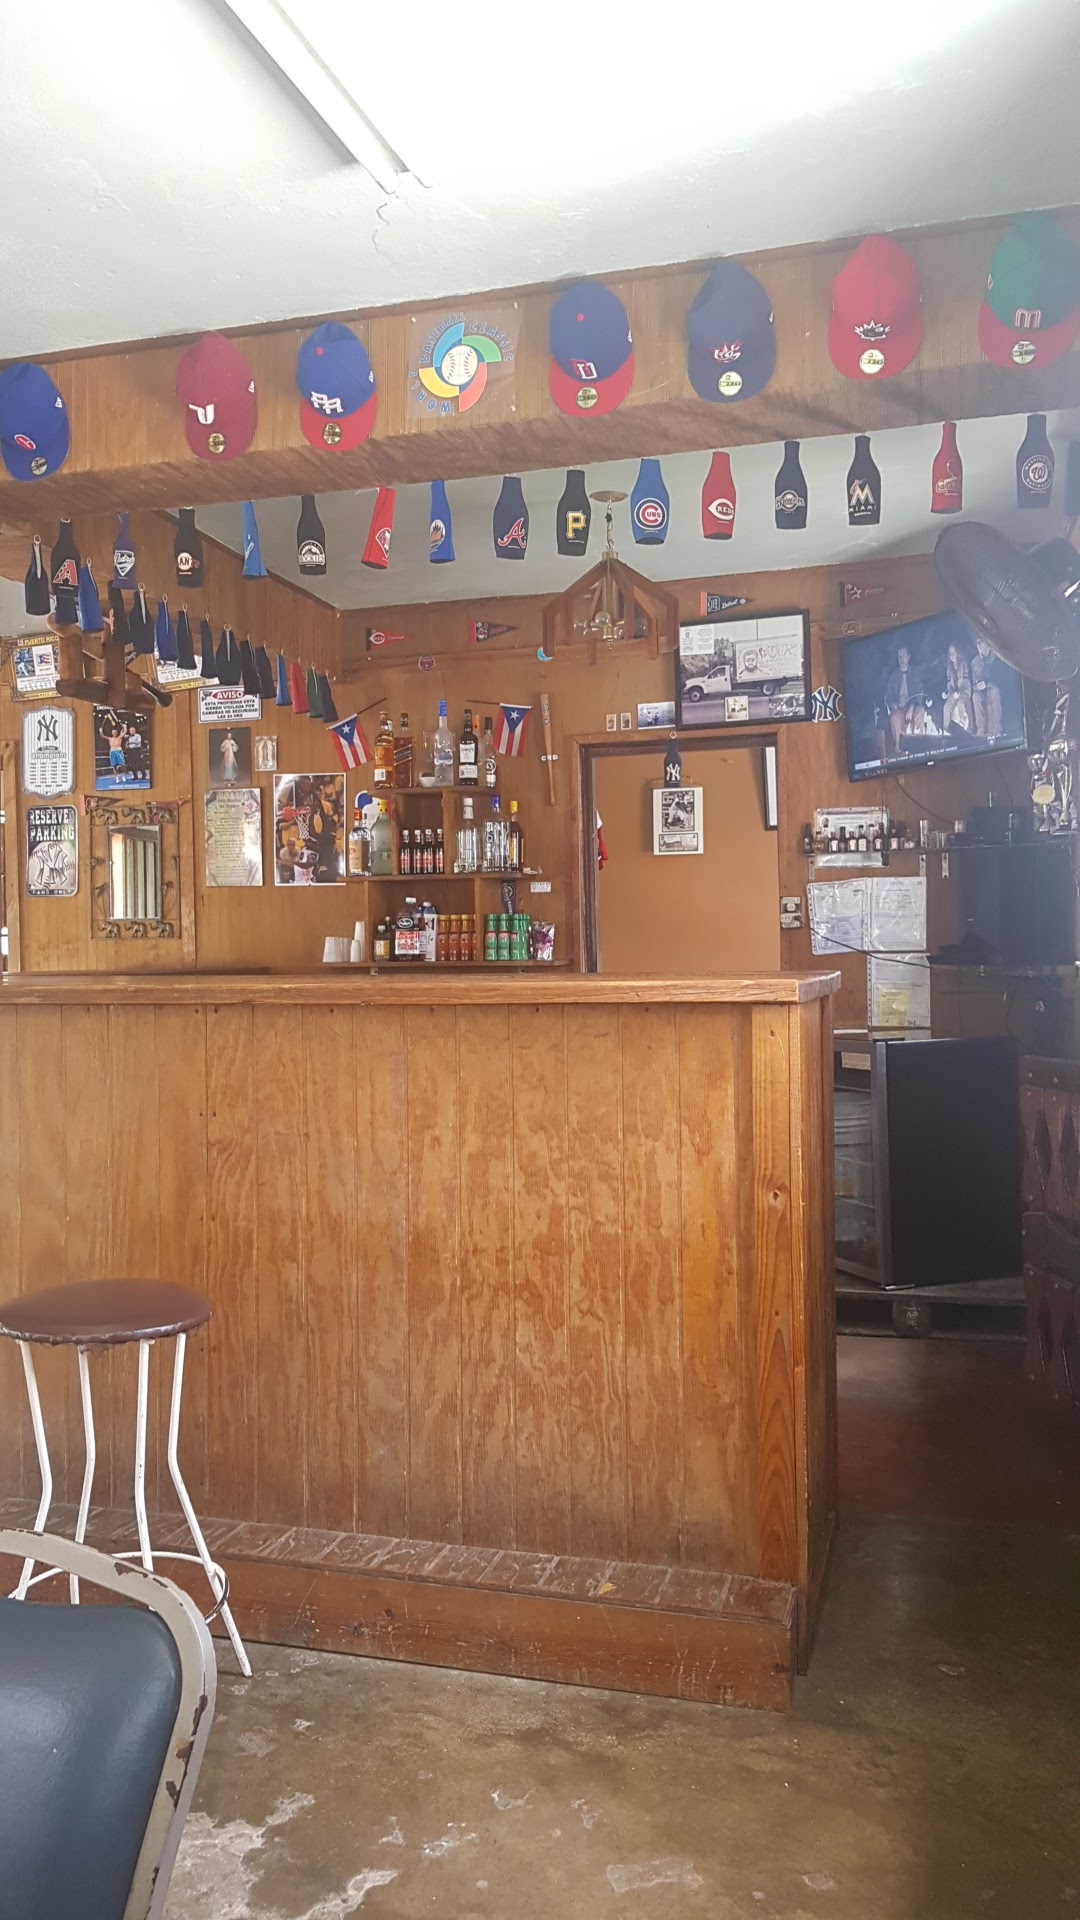 Chongos pub